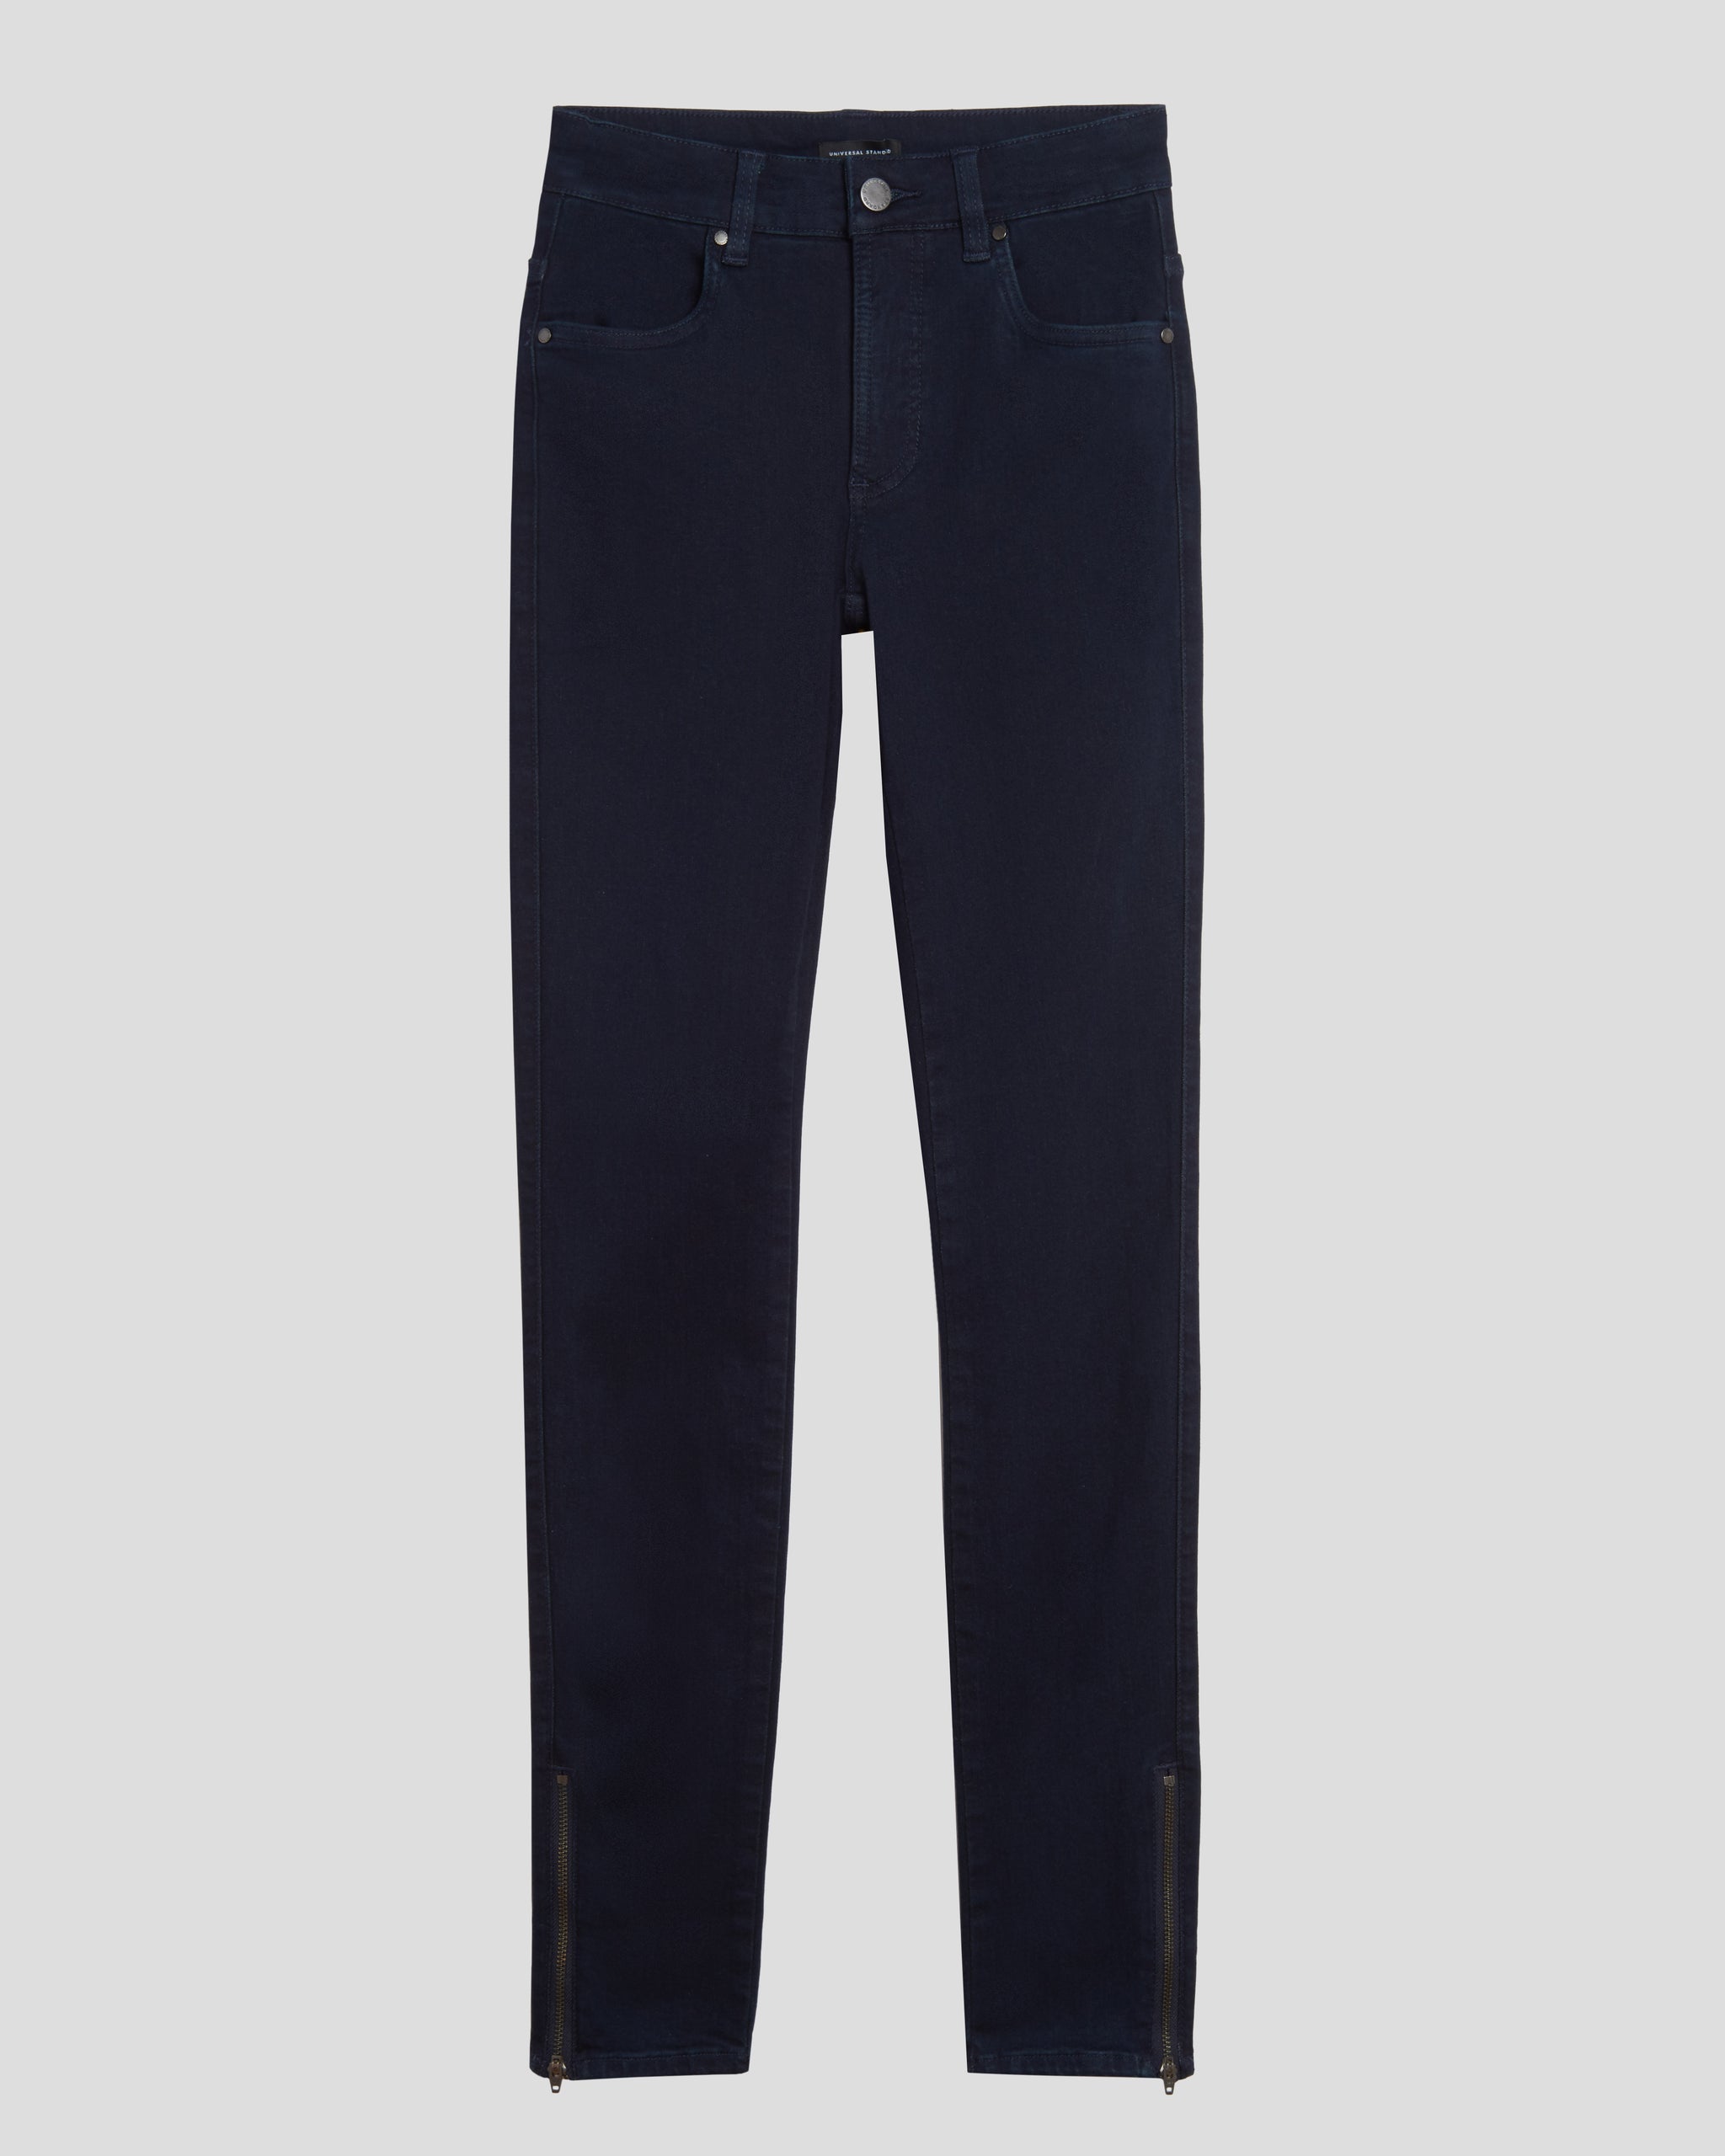 Ankle Zip Seine High Rise Skinny Jeans 32 Inch - Dark Indigo ...